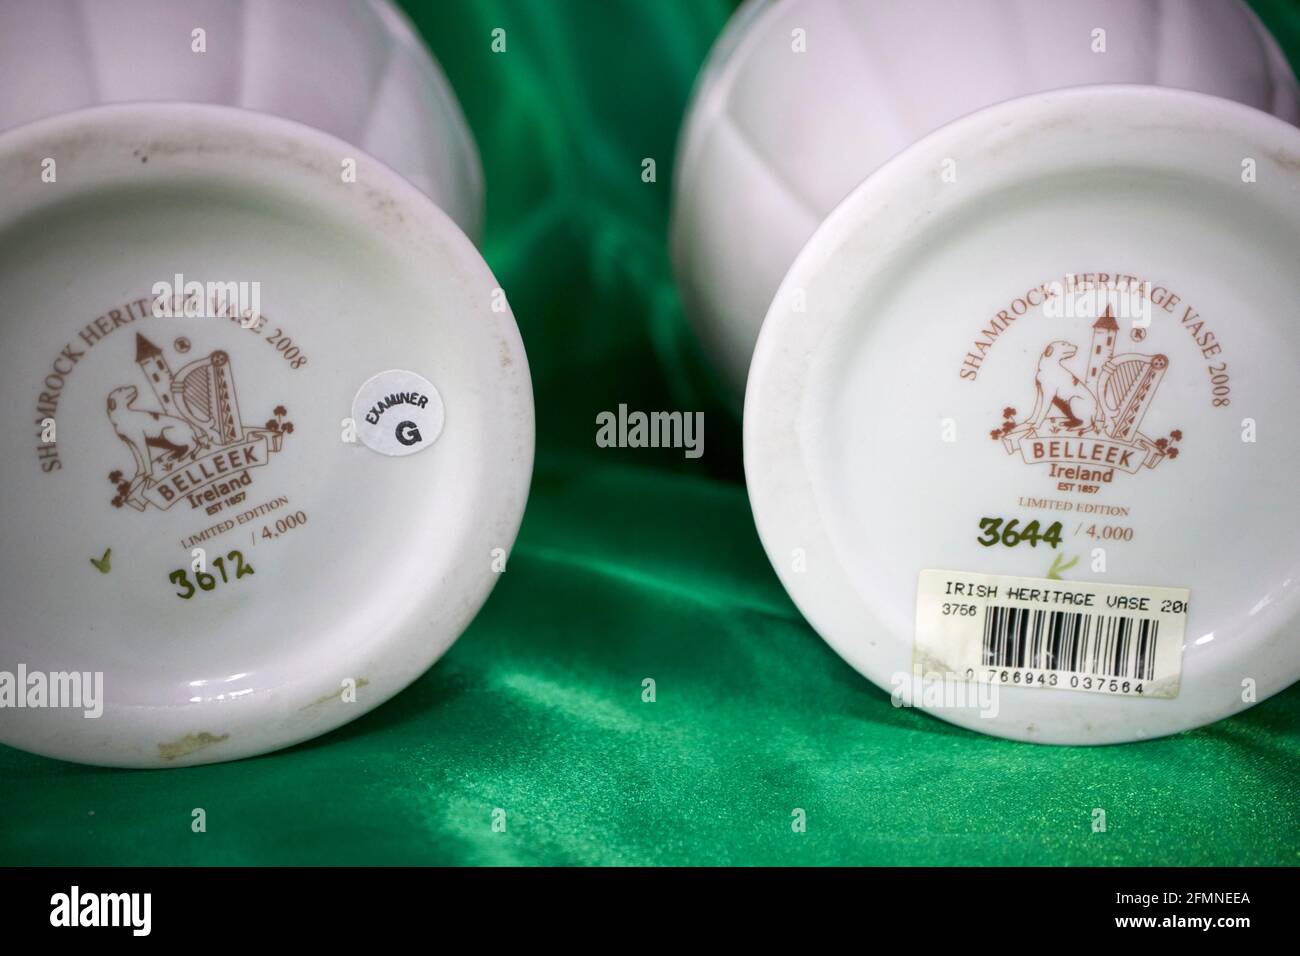 Original Firmenmarken und Briefmarken auf zwei limitierten belleek-Exemplaren Vasen belleek Keramik auf grünem Hintergrund Stockfoto